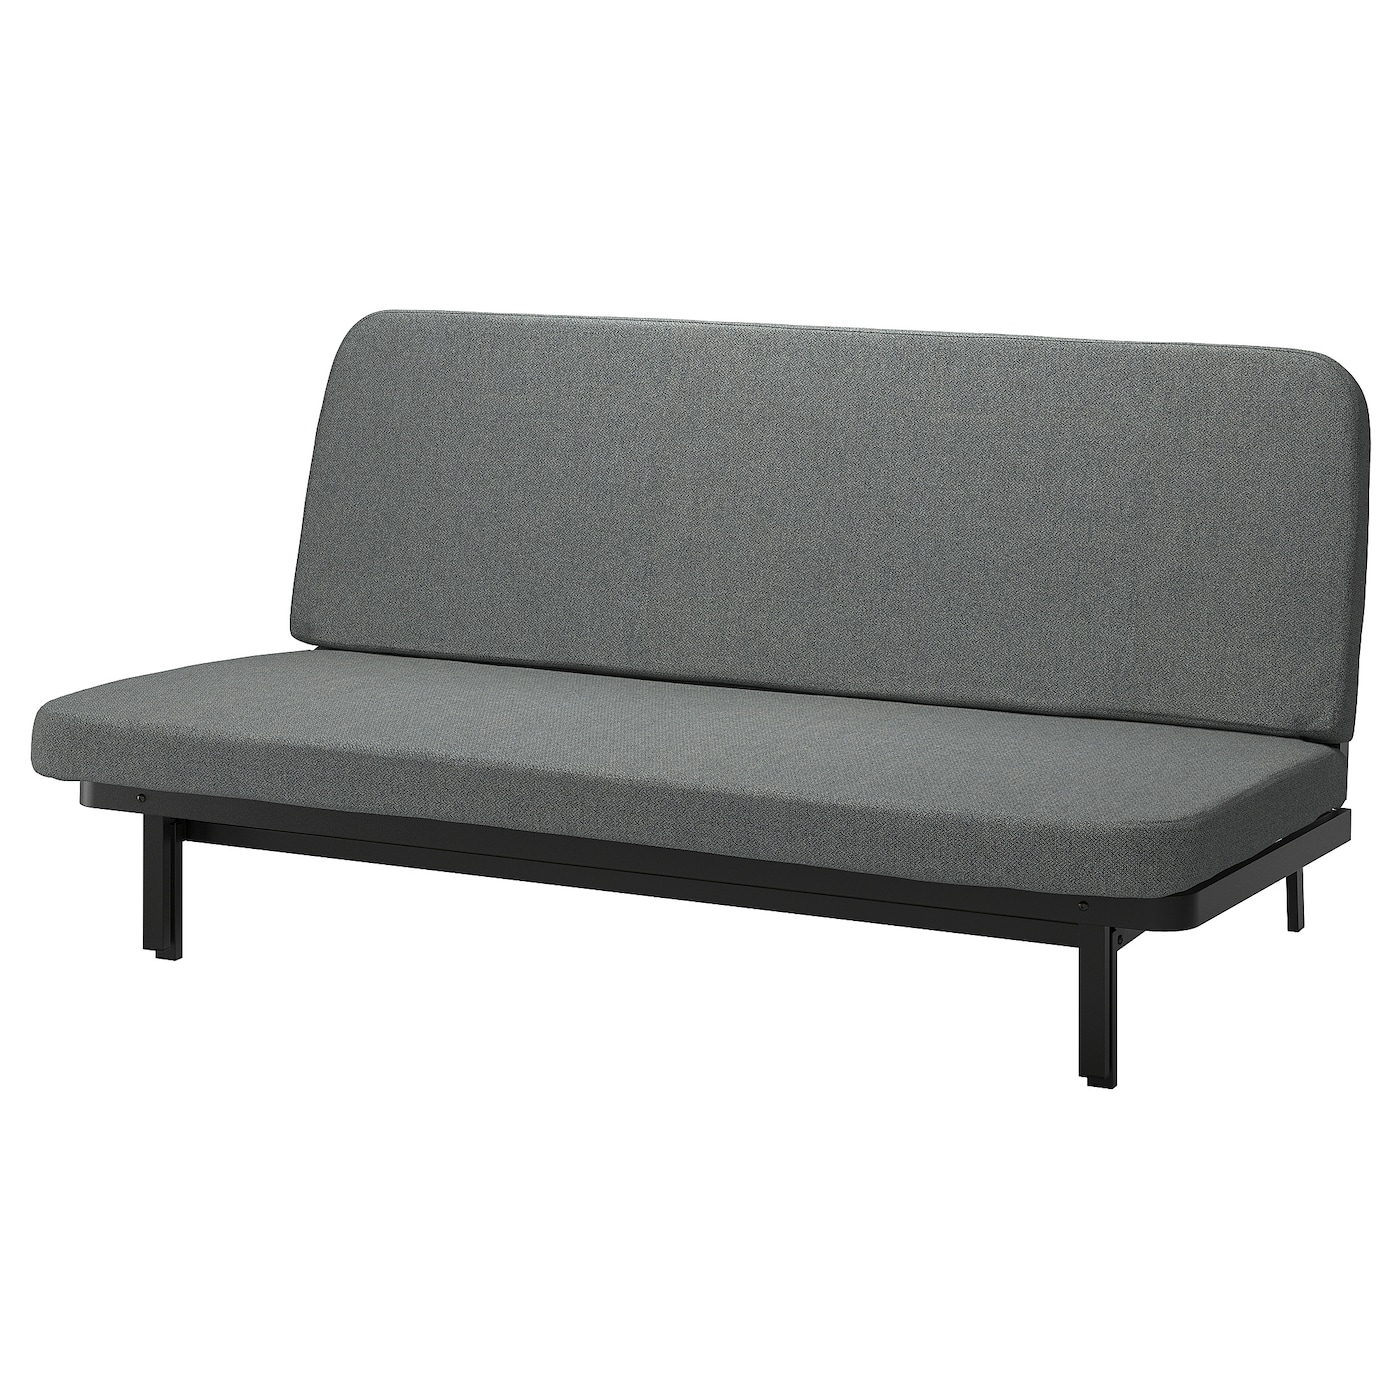 диван кровать тулон 3 торонто серый NYHAMN 3-местный диван-кровать, поролоновый матрас в комплекте/Скартофт черный/светло-серый IKEA